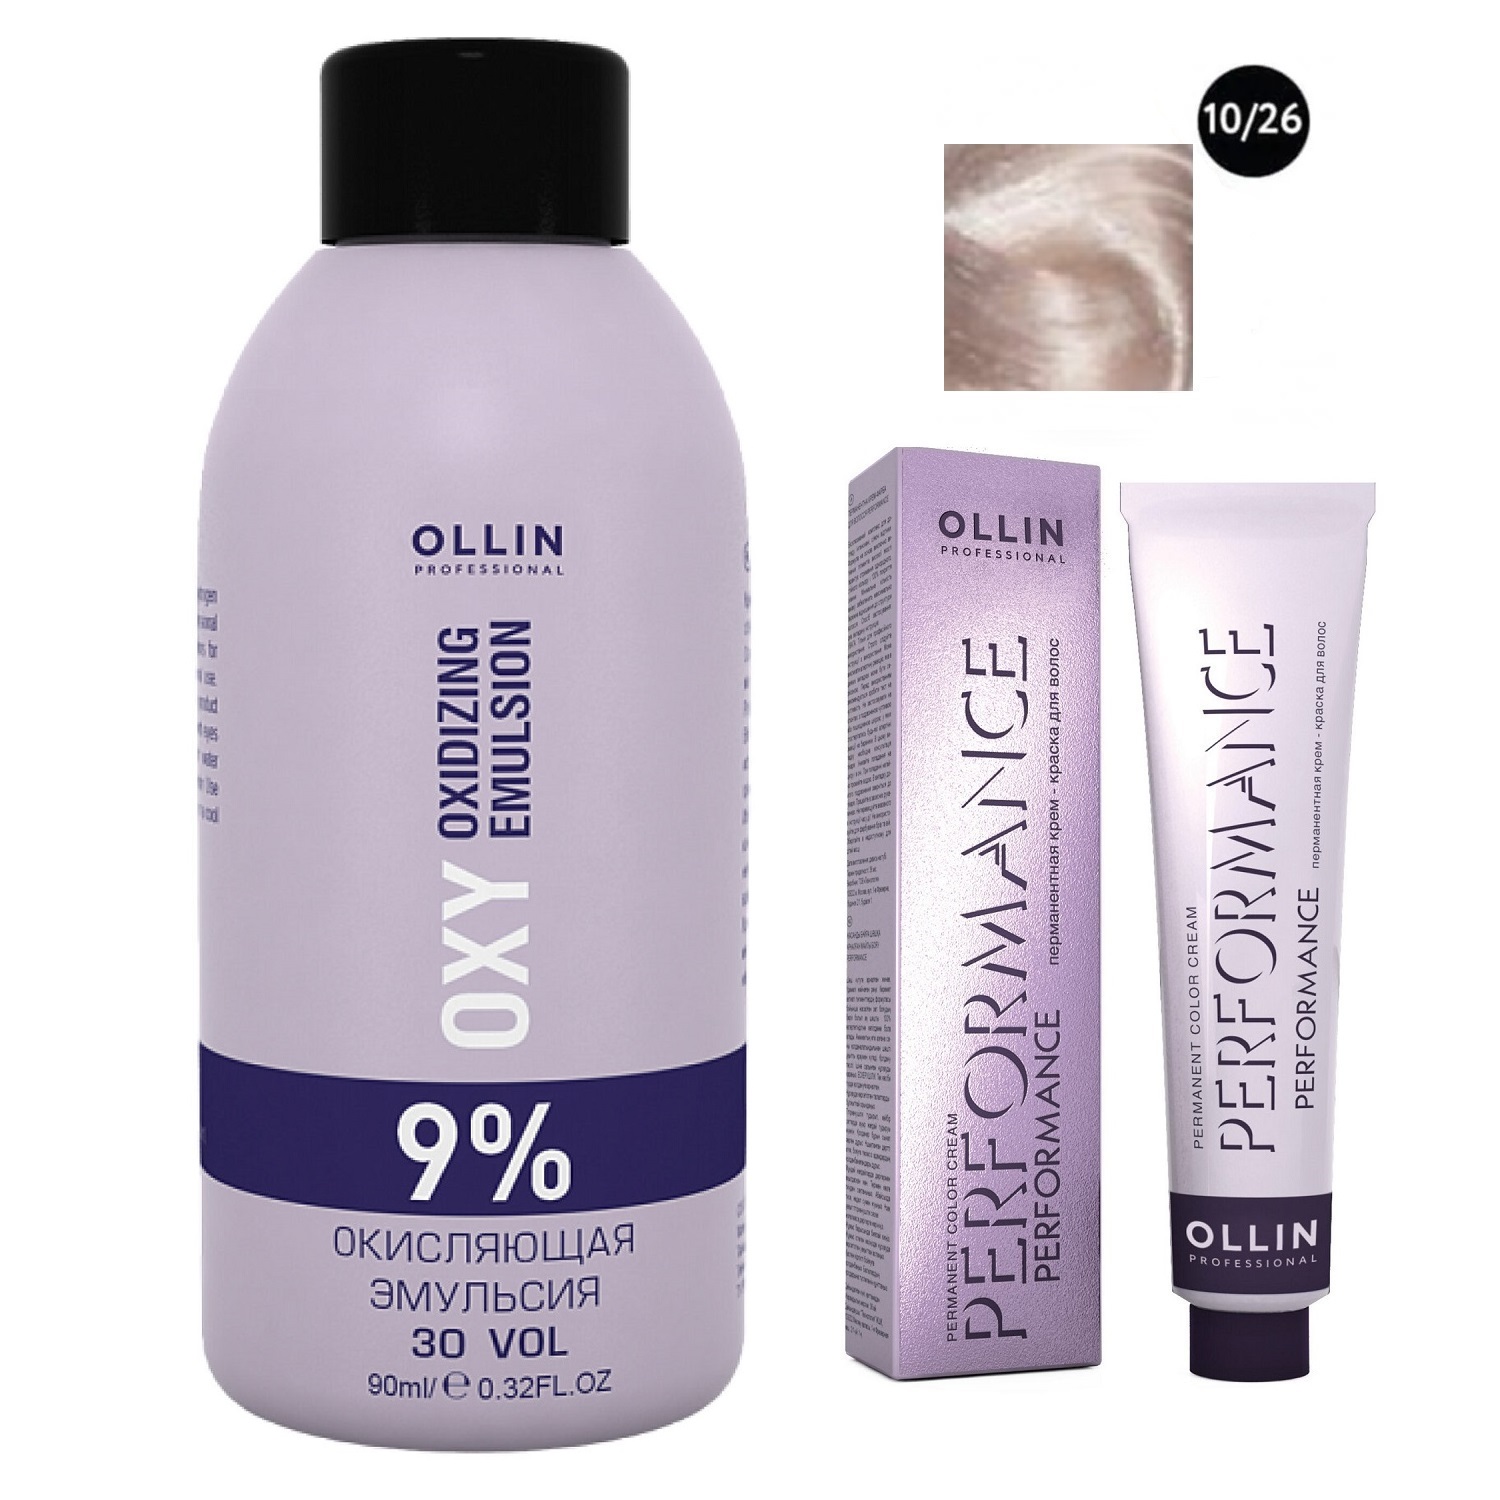 Ollin Professional Набор Перманентная крем-краска для волос Ollin Color оттенок 10/26 светлый блондин розовый 60 мл + Окисляющая эмульсия Oxy 9% 90 мл (Ollin Professional, Performance)